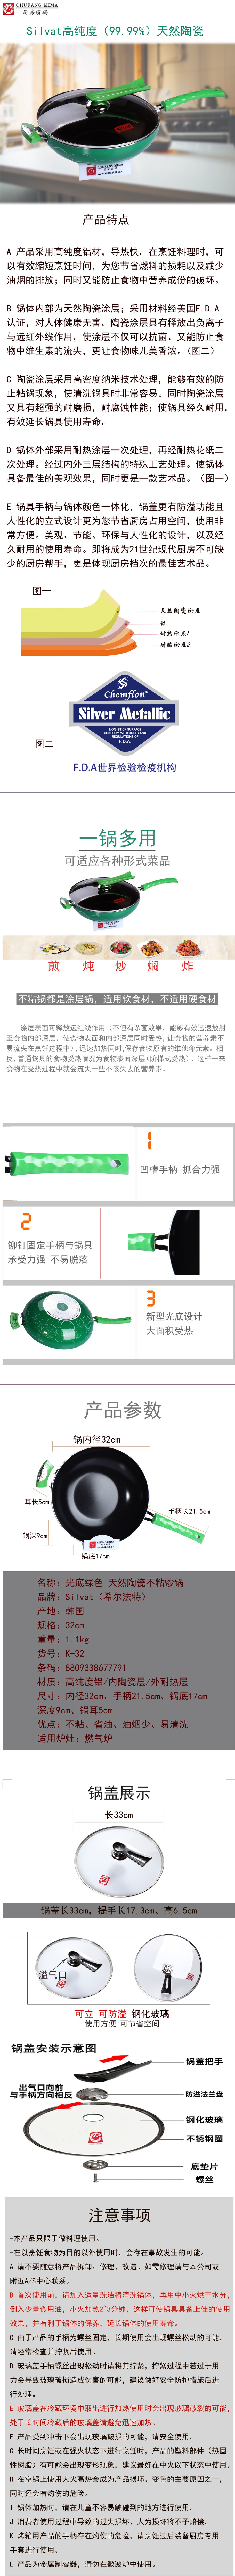 厨房密码 韩国进口厨具 光底绿色 天然陶瓷不粘炒锅32cm详情2